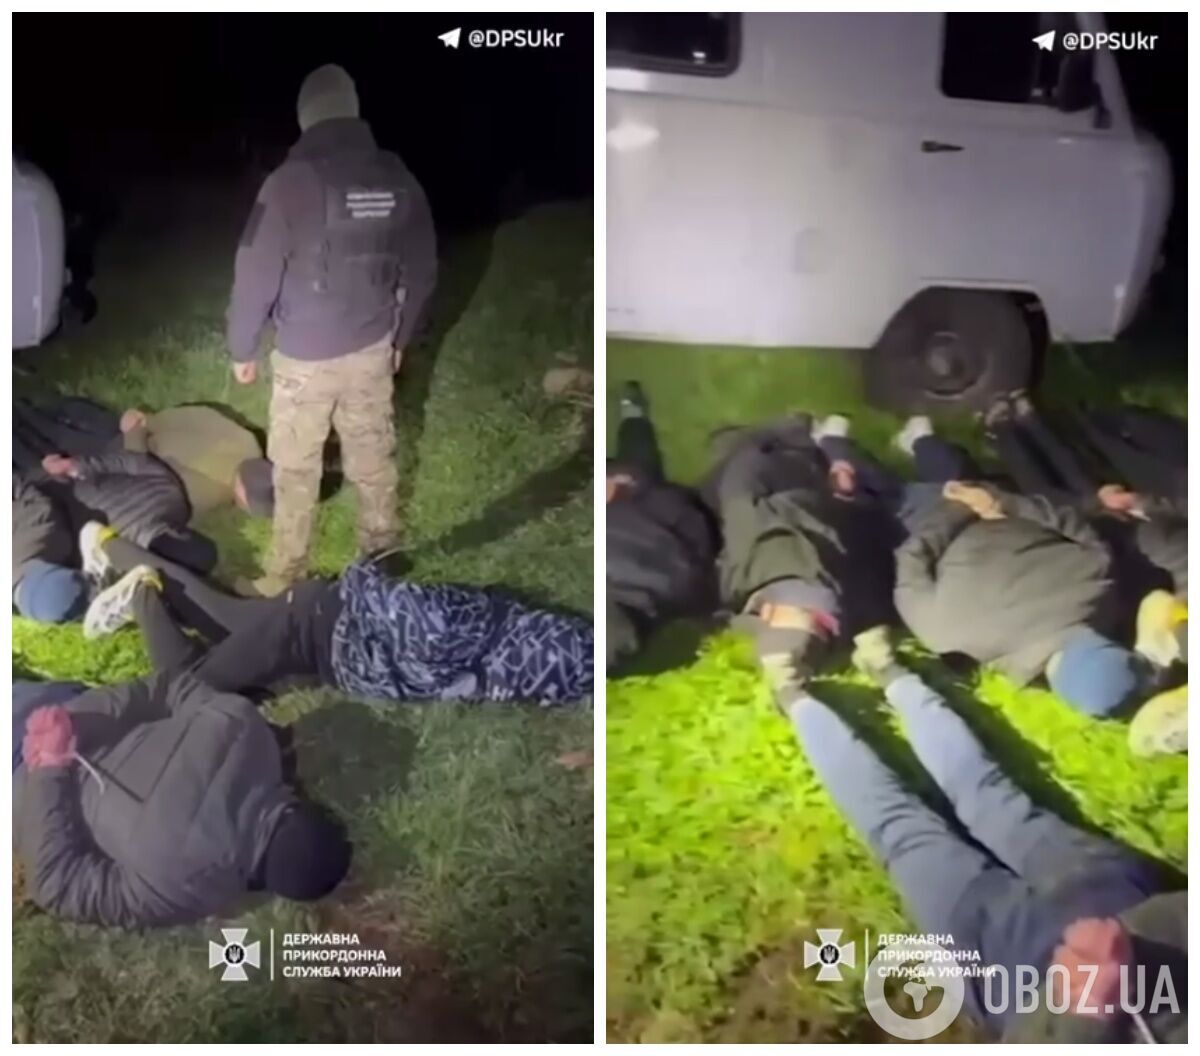 Задержание граждан, которые пытались выехать из Украины.